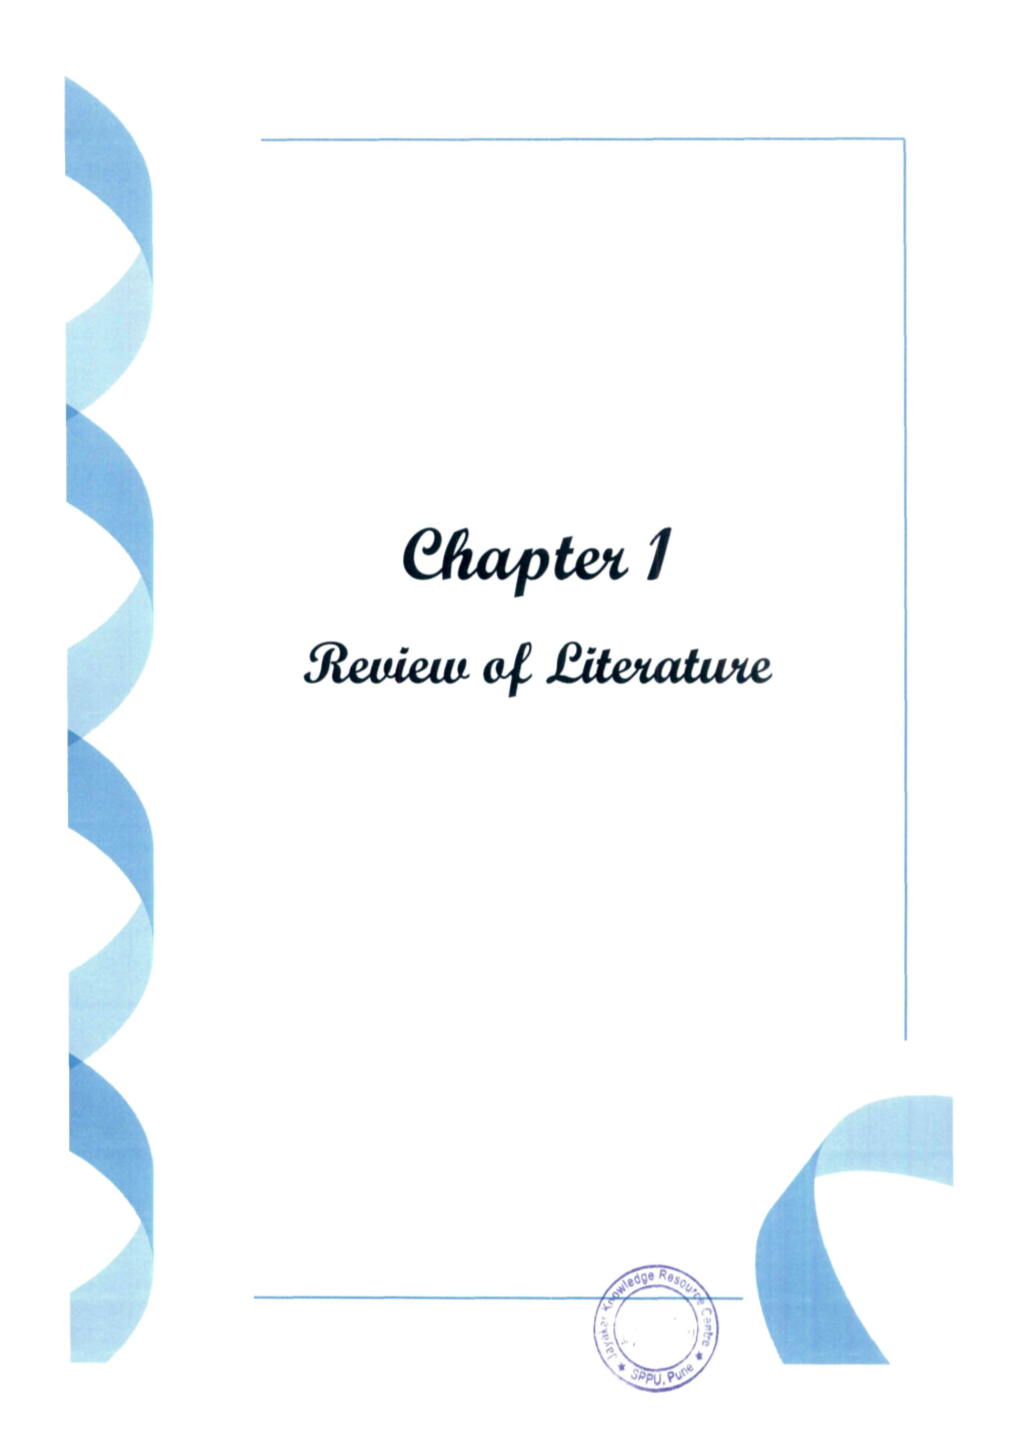 Chapter 1 Jteuiem of £It&Uuwie Chapter 1